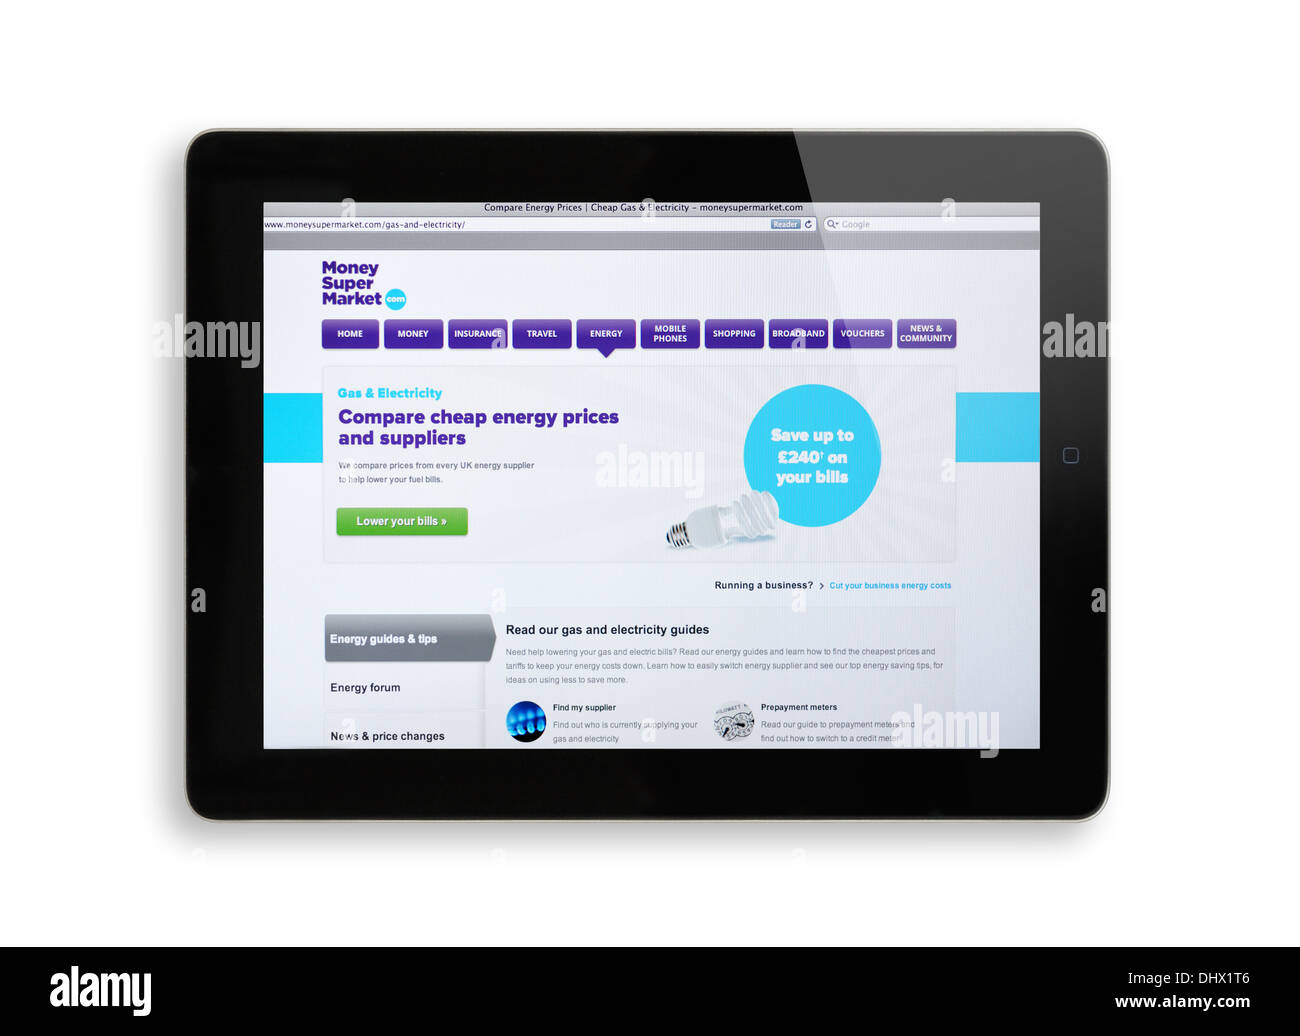 MoneySuperMarket website on iPad screen Stock Photo